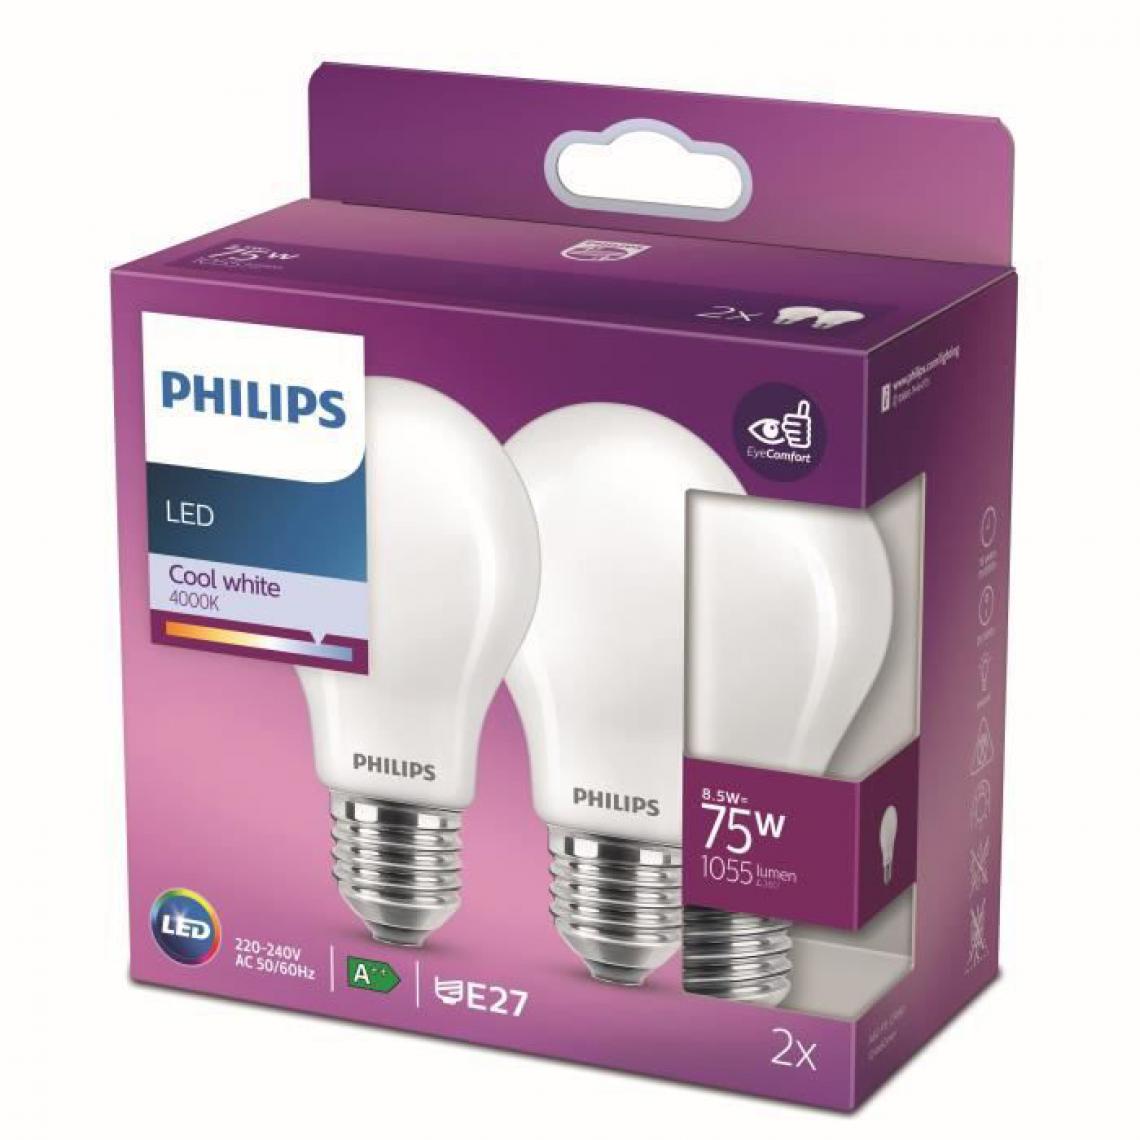 Philips - Philips ampoule LED Equivalent 75W E27 Blanc froid non dimmable, verre, lot de 2 - Ampoules LED